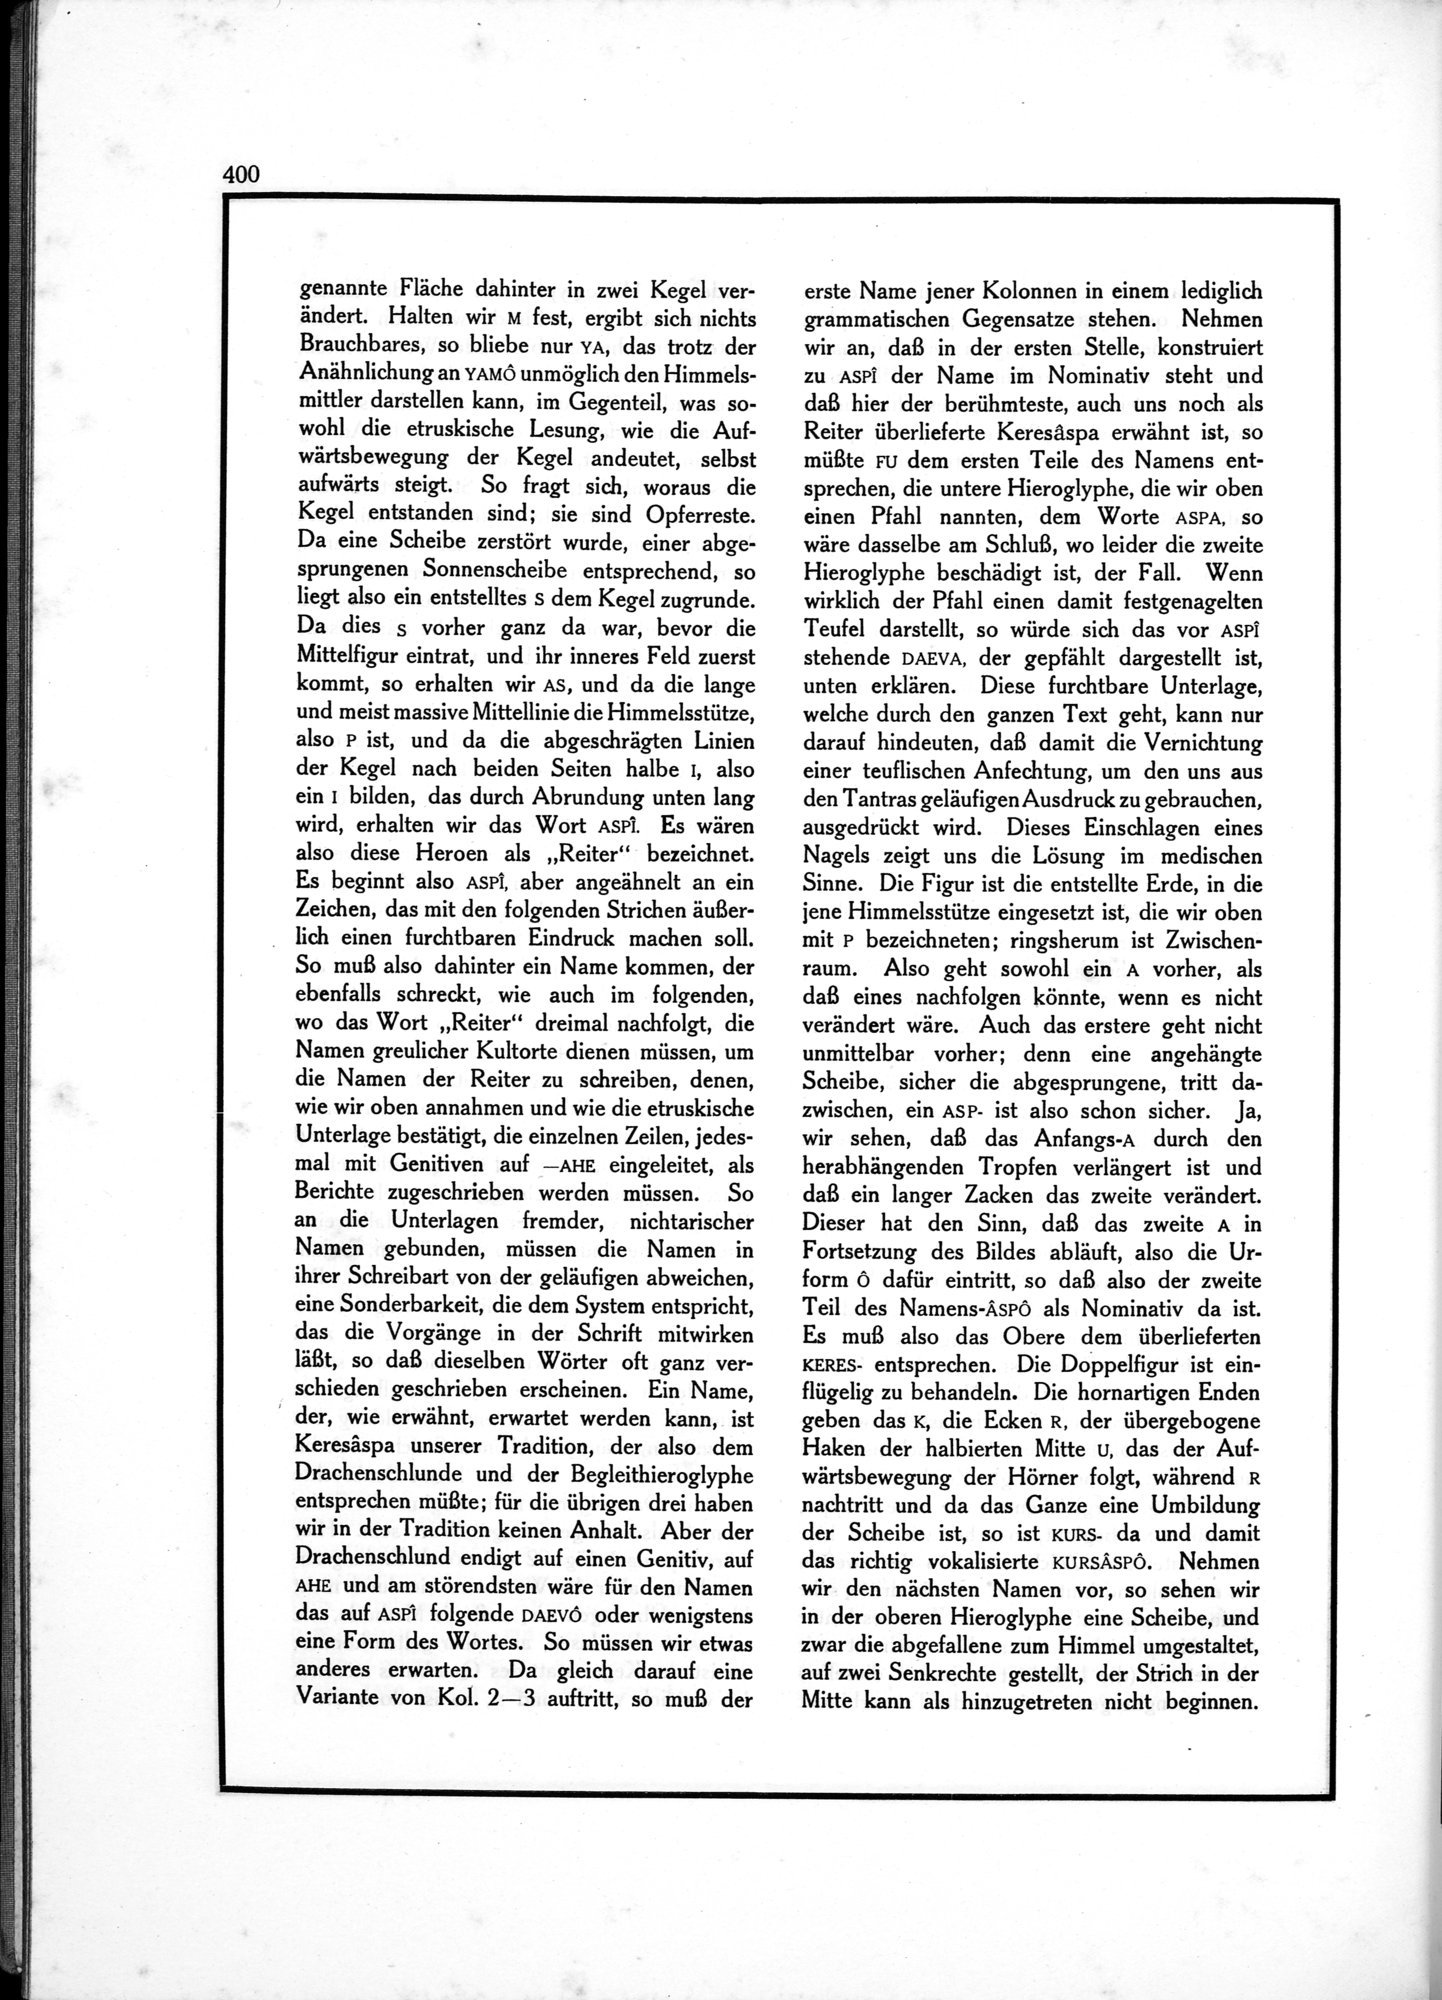 Die Teufel des Avesta und Ihre Beziehungen zur Ikonographie des Buddhismus Zentral-Asiens : vol.1 / Page 404 (Grayscale High Resolution Image)